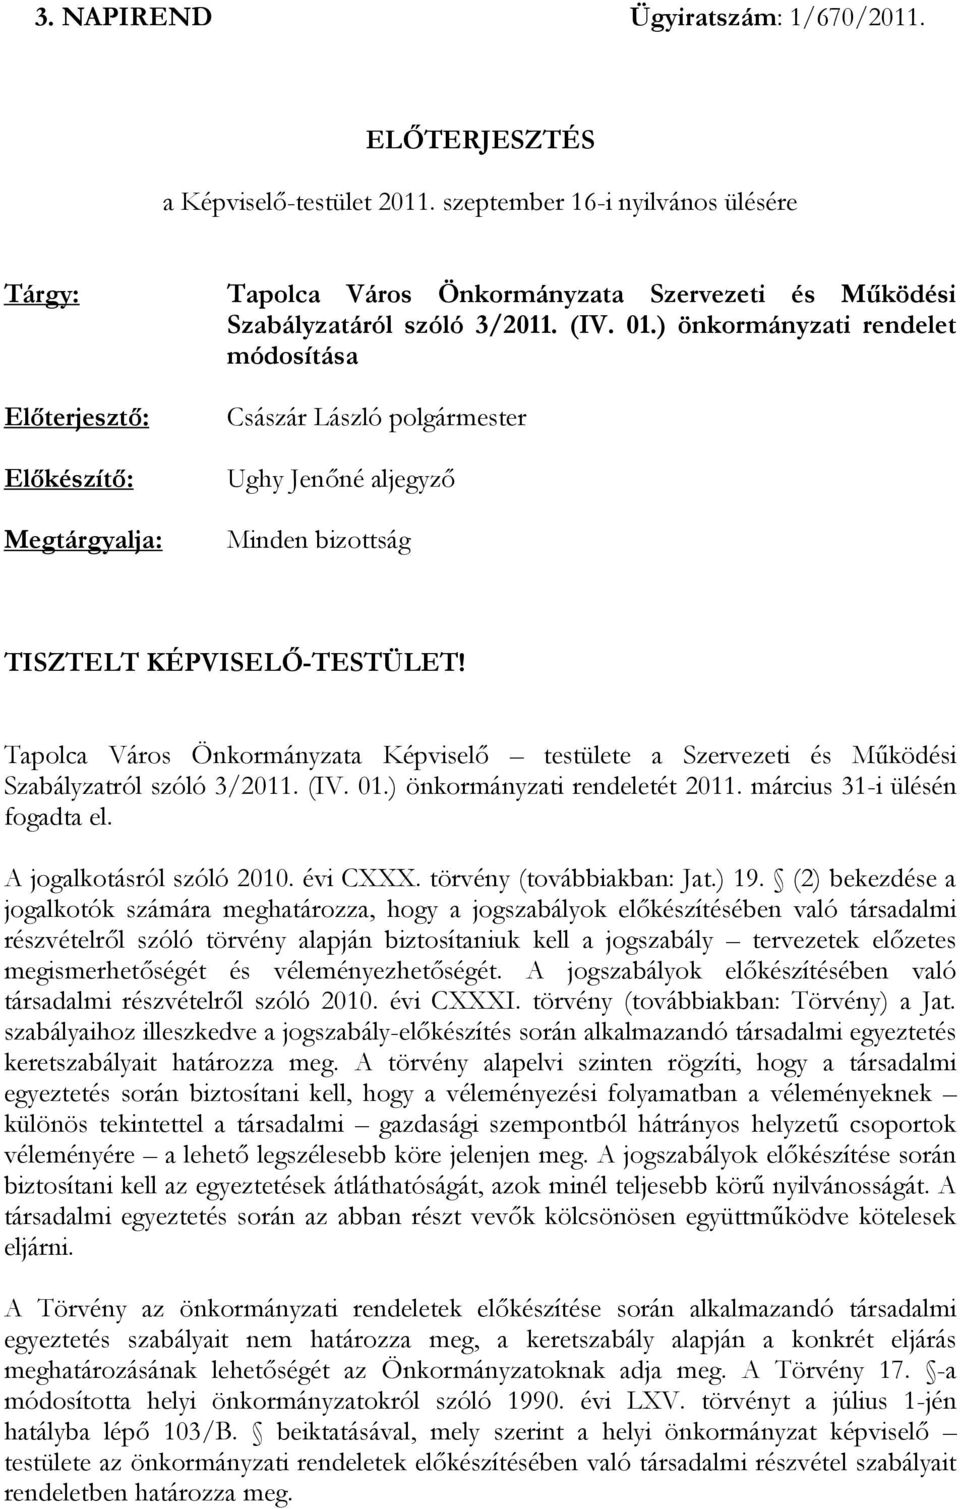 Tapolca Város Önkormányzata Képviselő testülete a Szervezeti és Működési Szabályzatról szóló 3/2011. (IV. 01.) önkormányzati rendeletét 2011. március 31-i ülésén fogadta el.